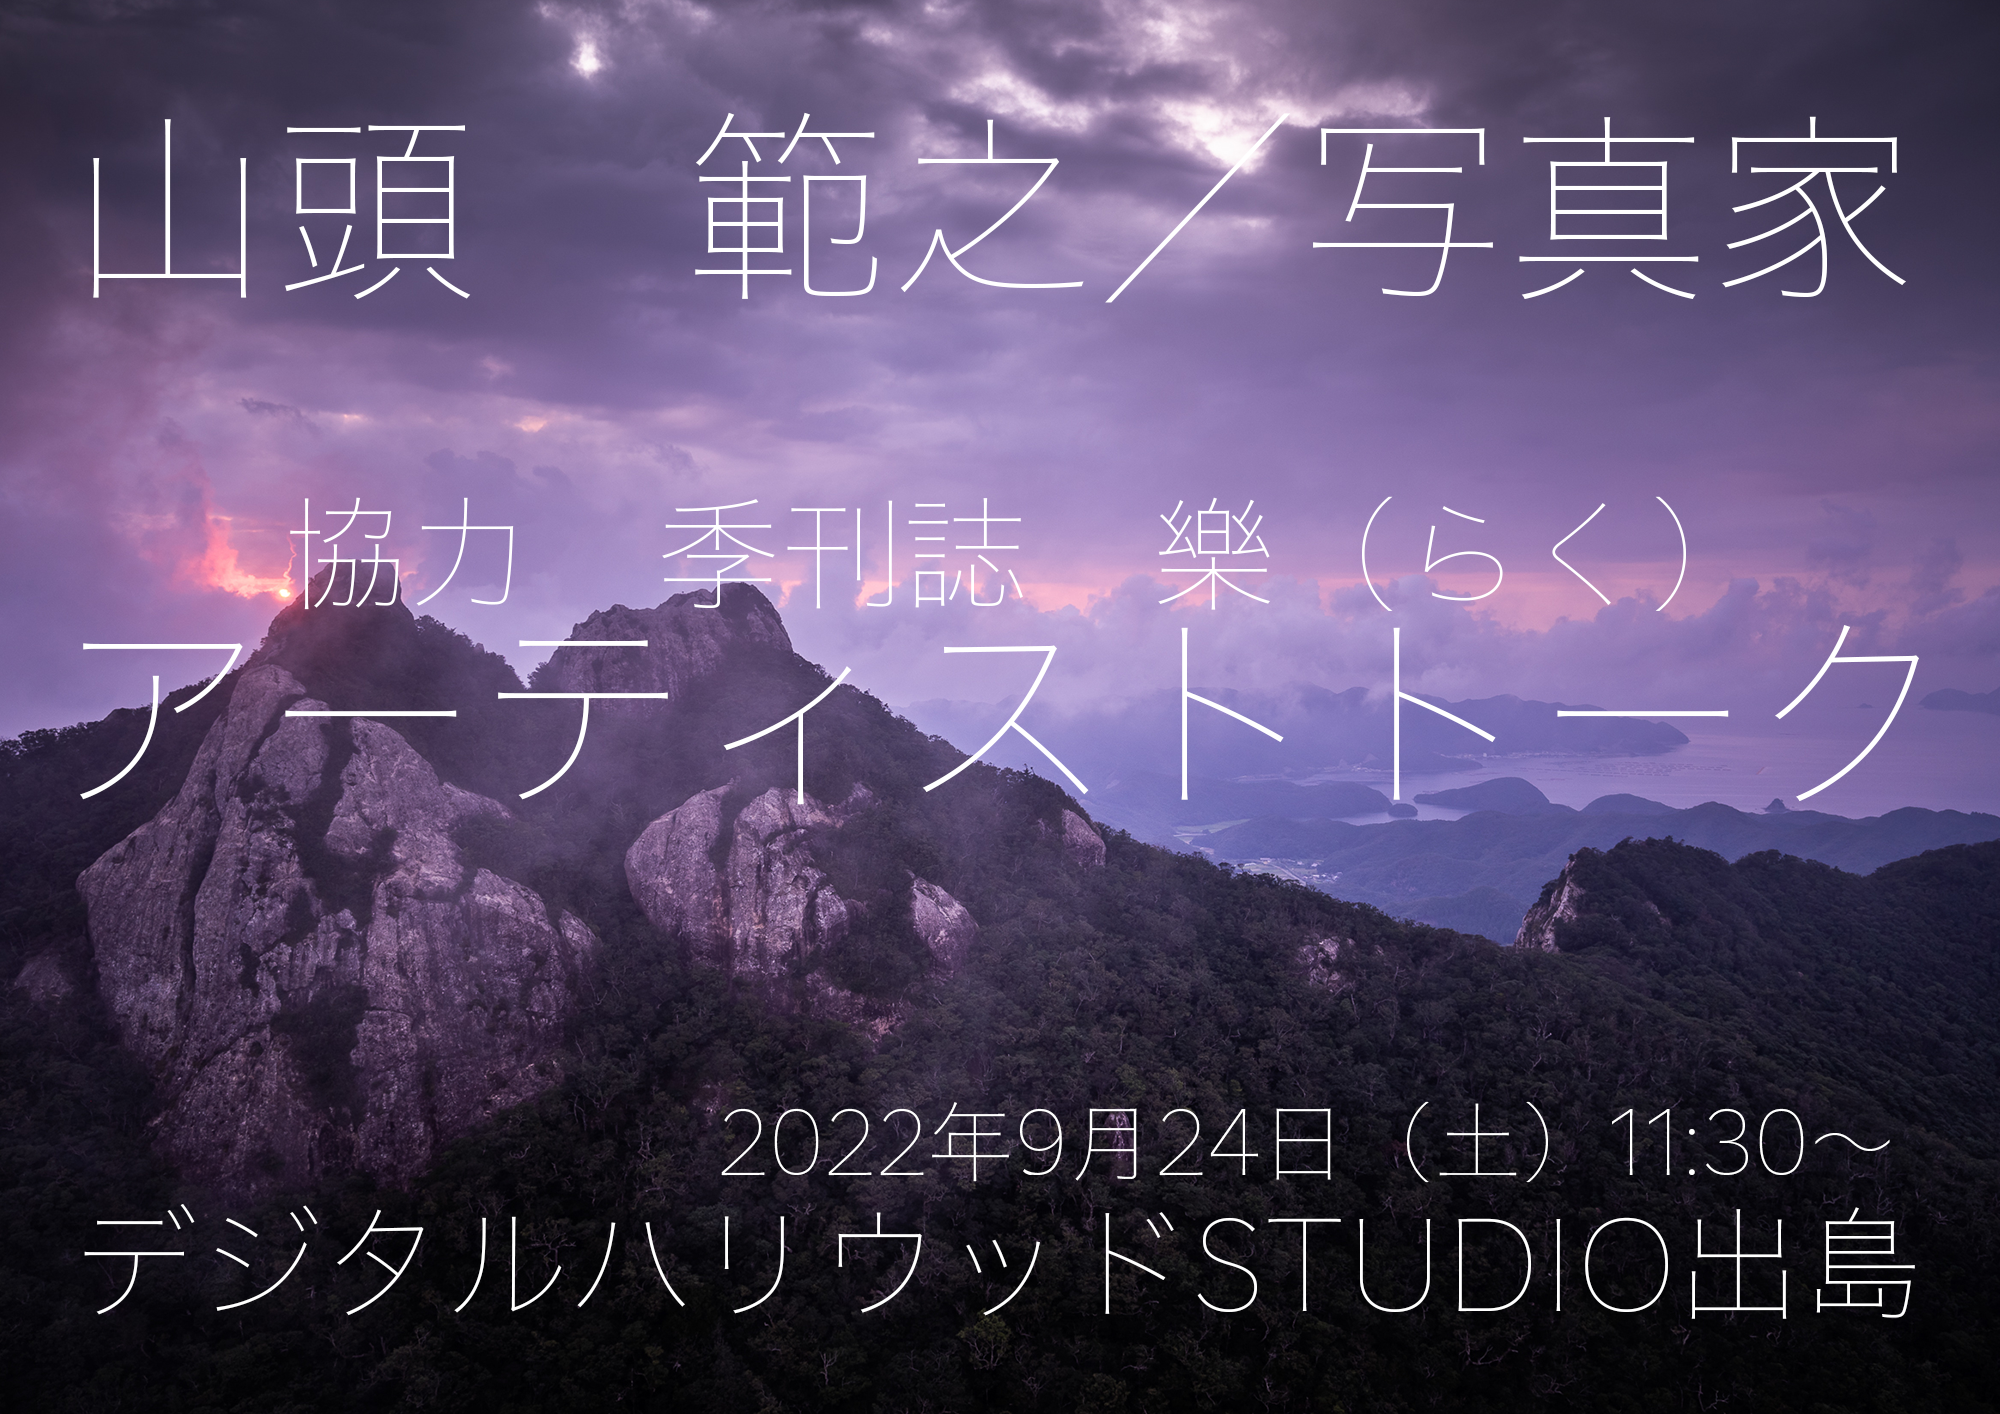 【トークイベント】山頭 範之/写真家、デジタルハリウッドSTUDIO出島にてアーティストトークを開催します！